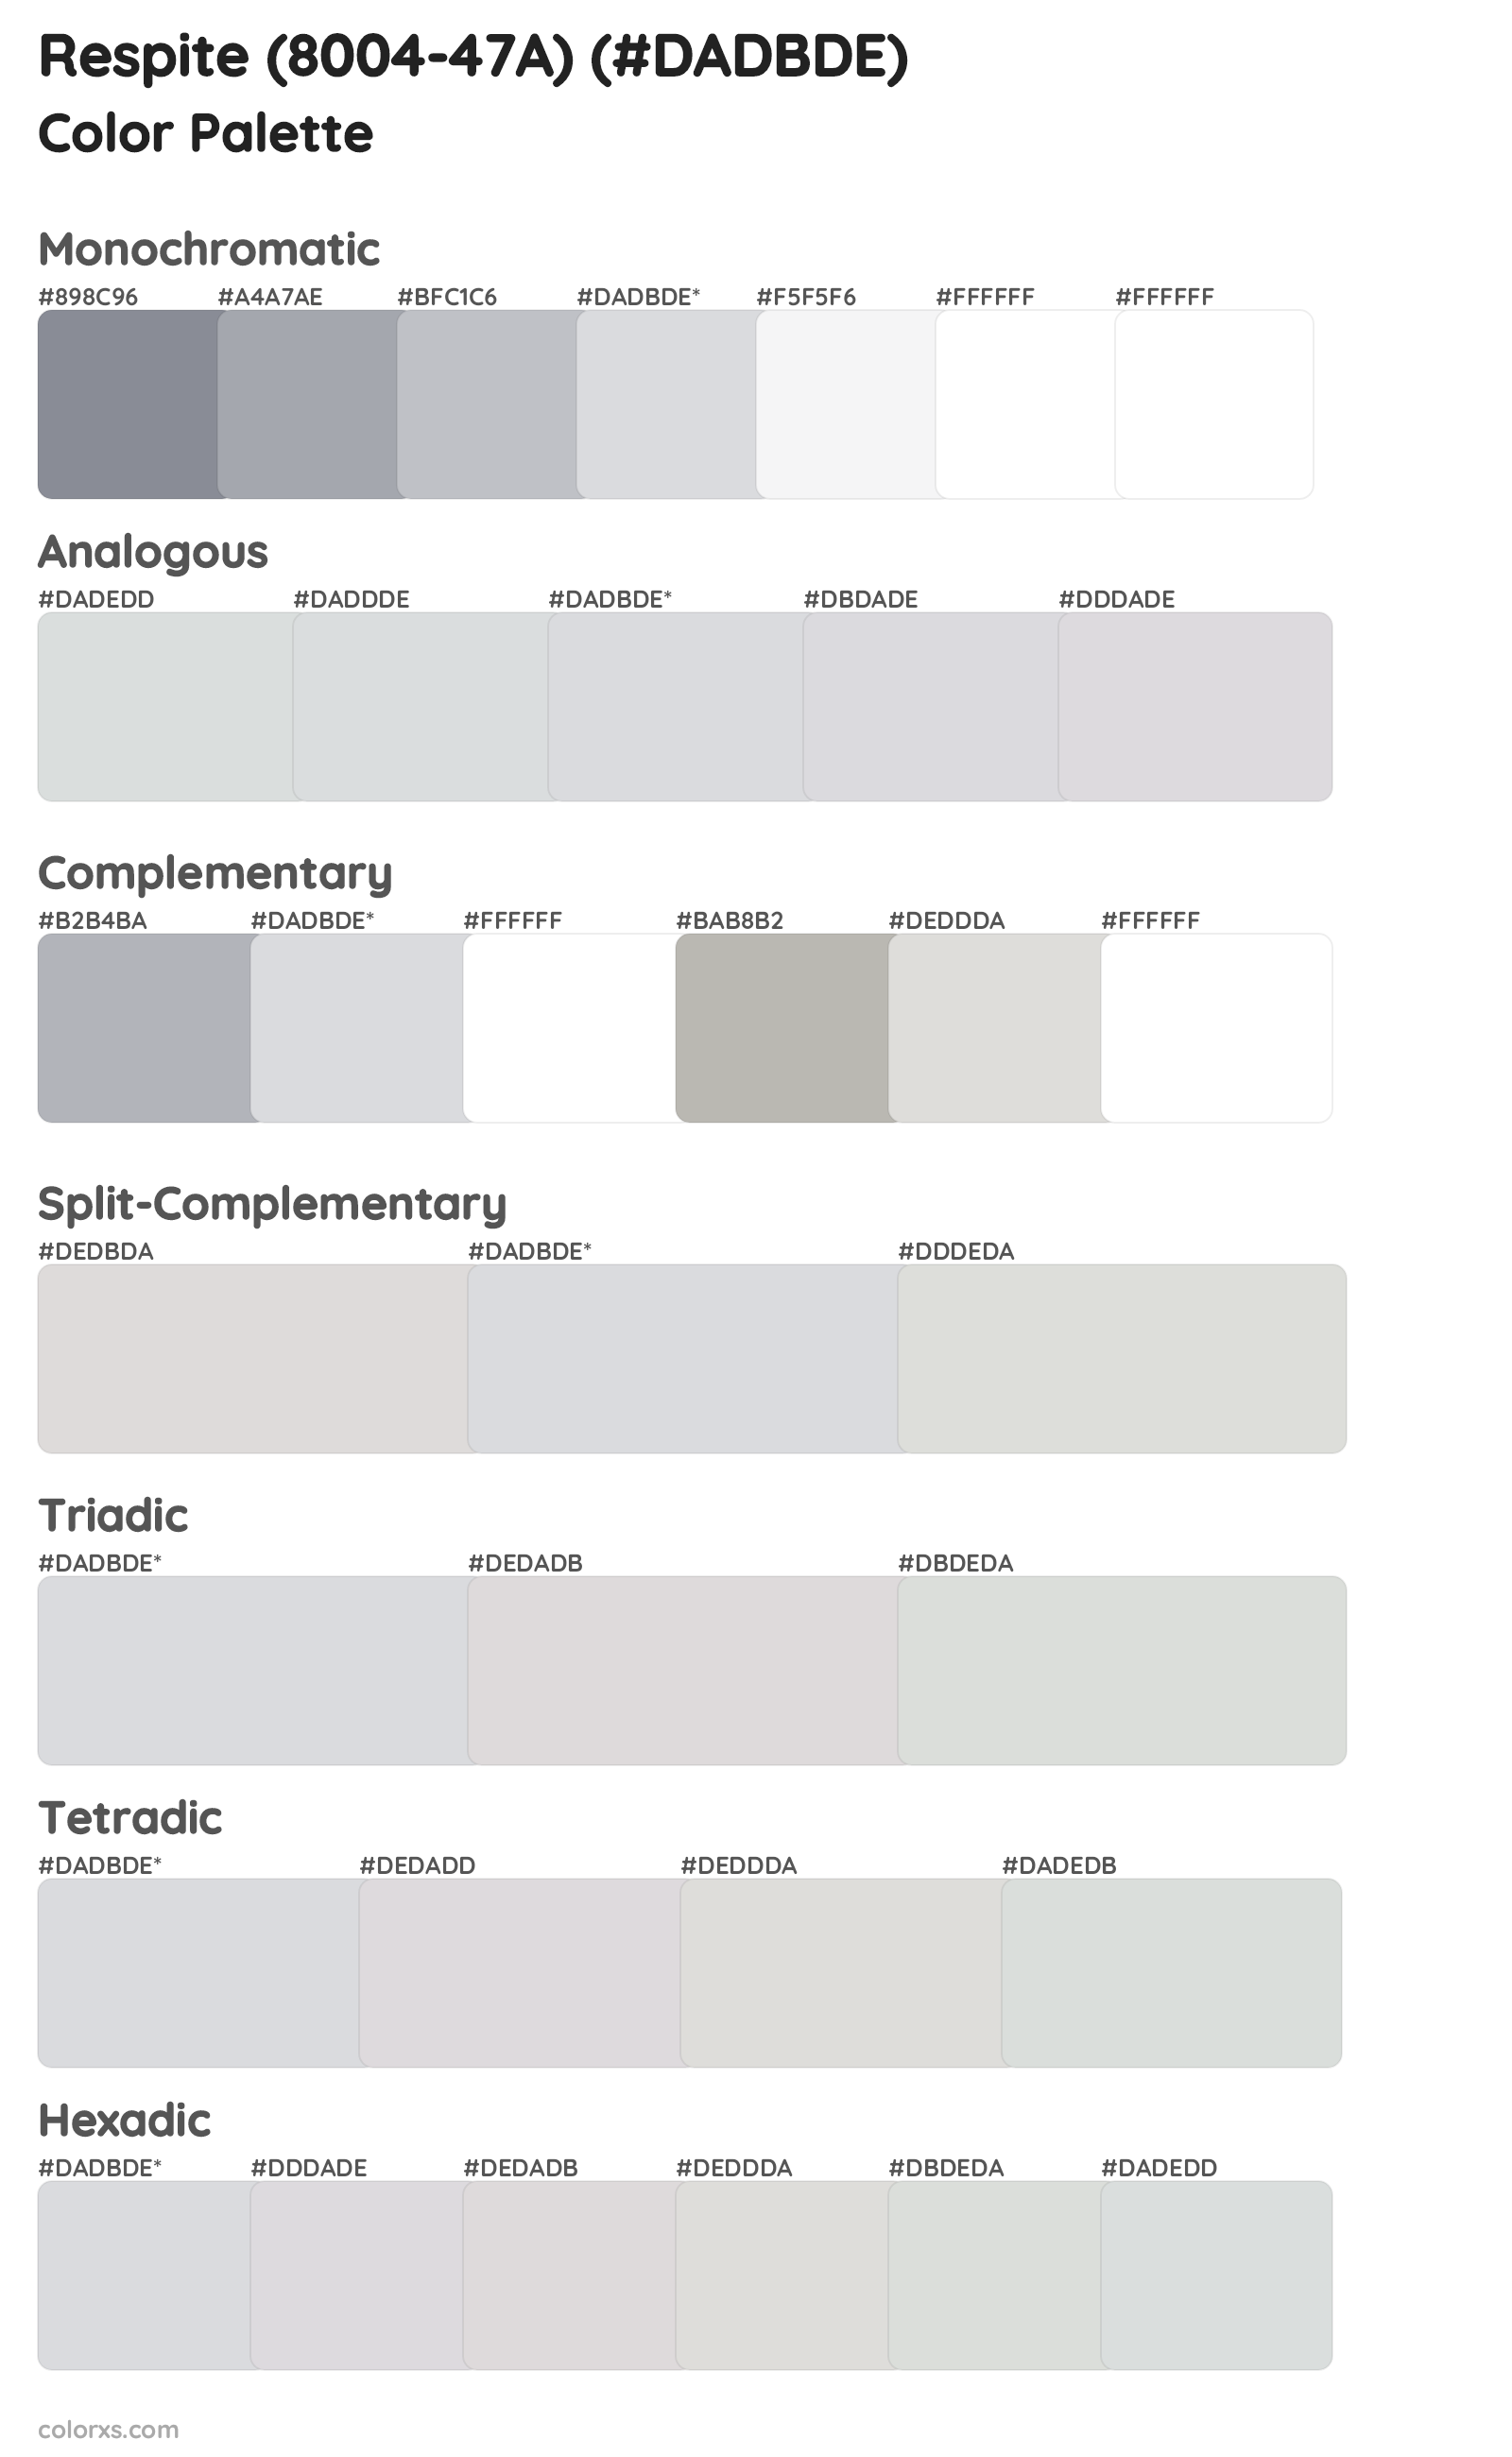 Respite (8004-47A) Color Scheme Palettes